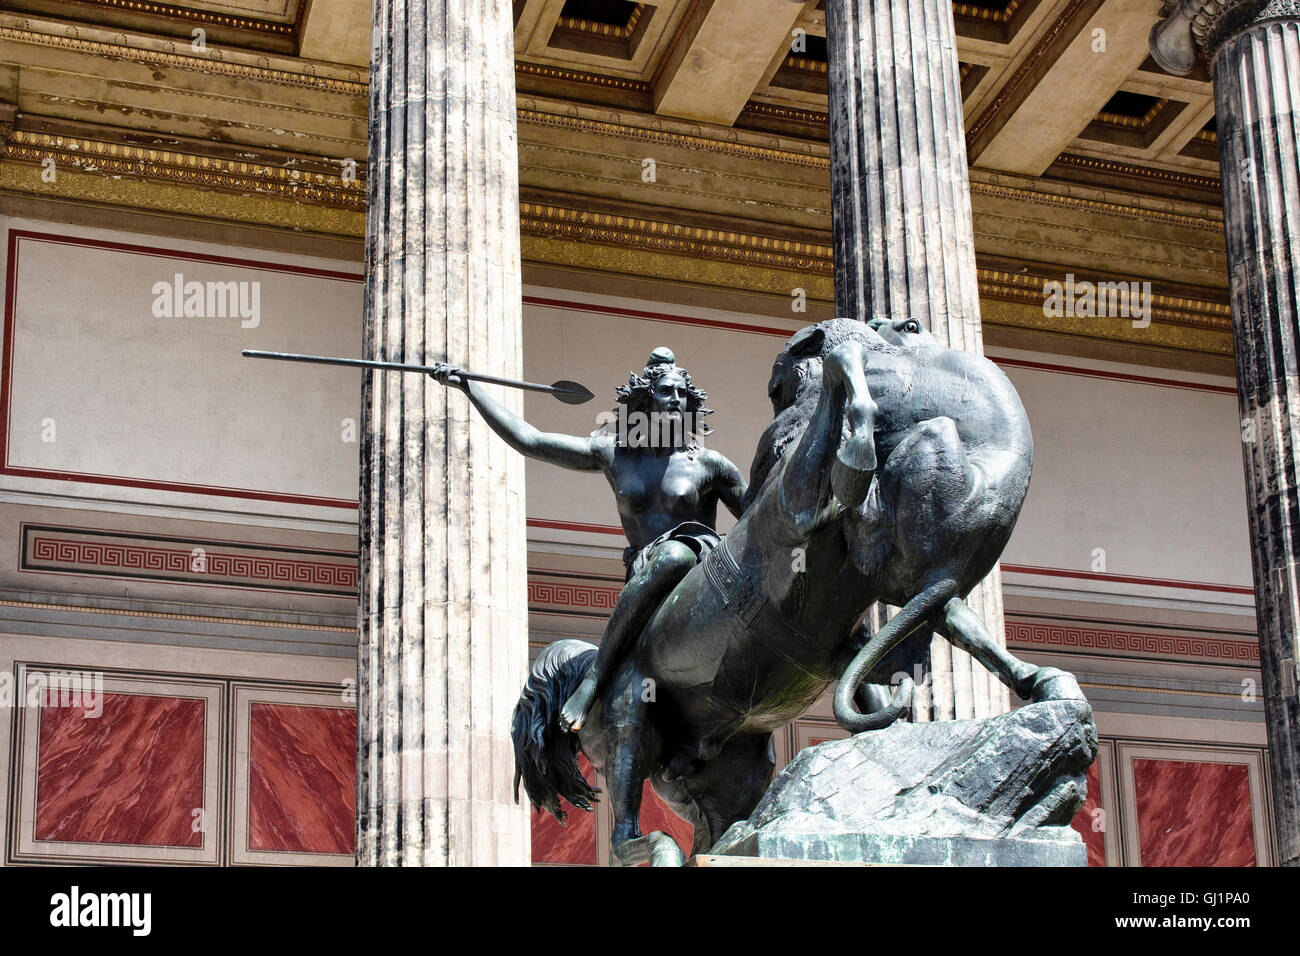 Amazon-Statue vor dem alten Museum auf der Museumsinsel in Berlin  Stockfotografie - Alamy